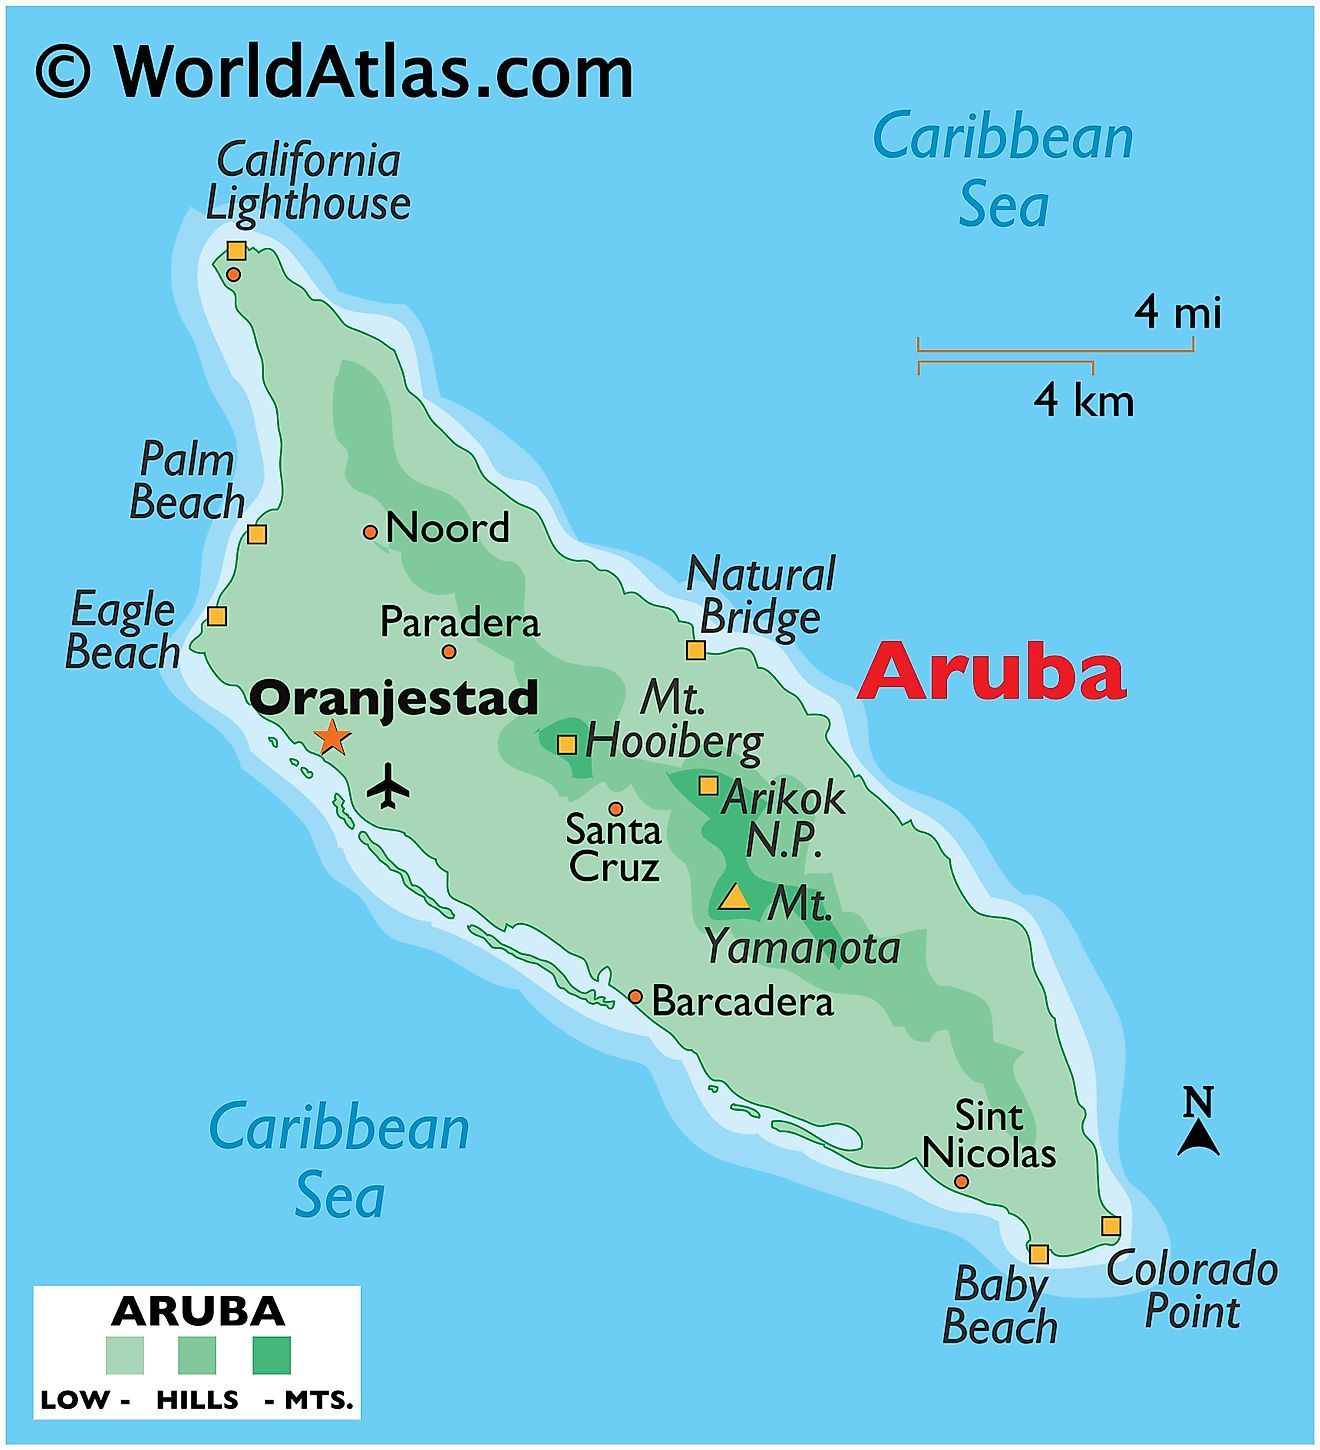 Mapa físico de Aruba que muestra terreno, parques nacionales, playas, punto más alto, etc.